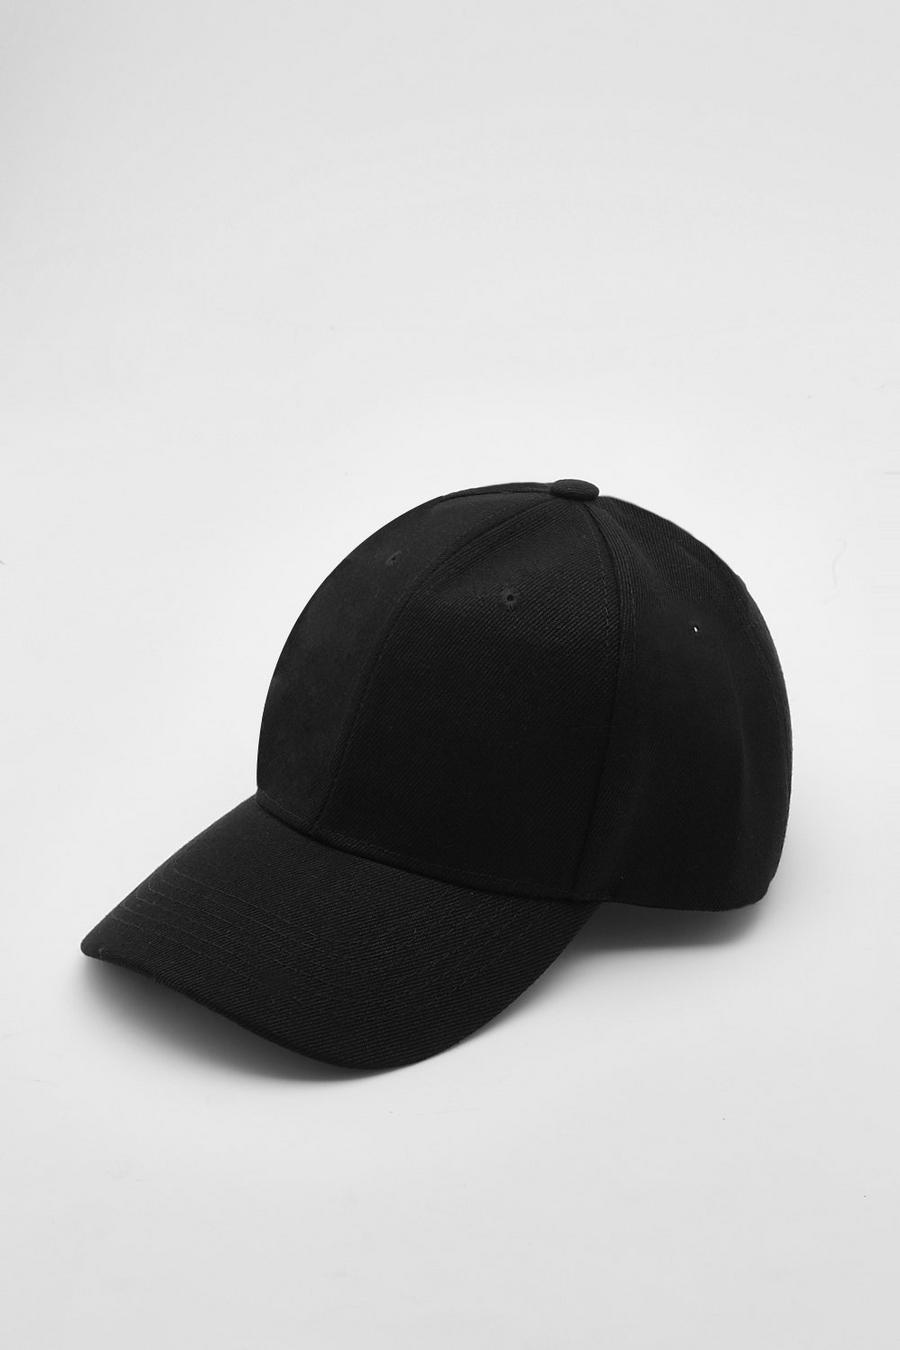 Cappello da baseball nero in tinta unita, Black nero